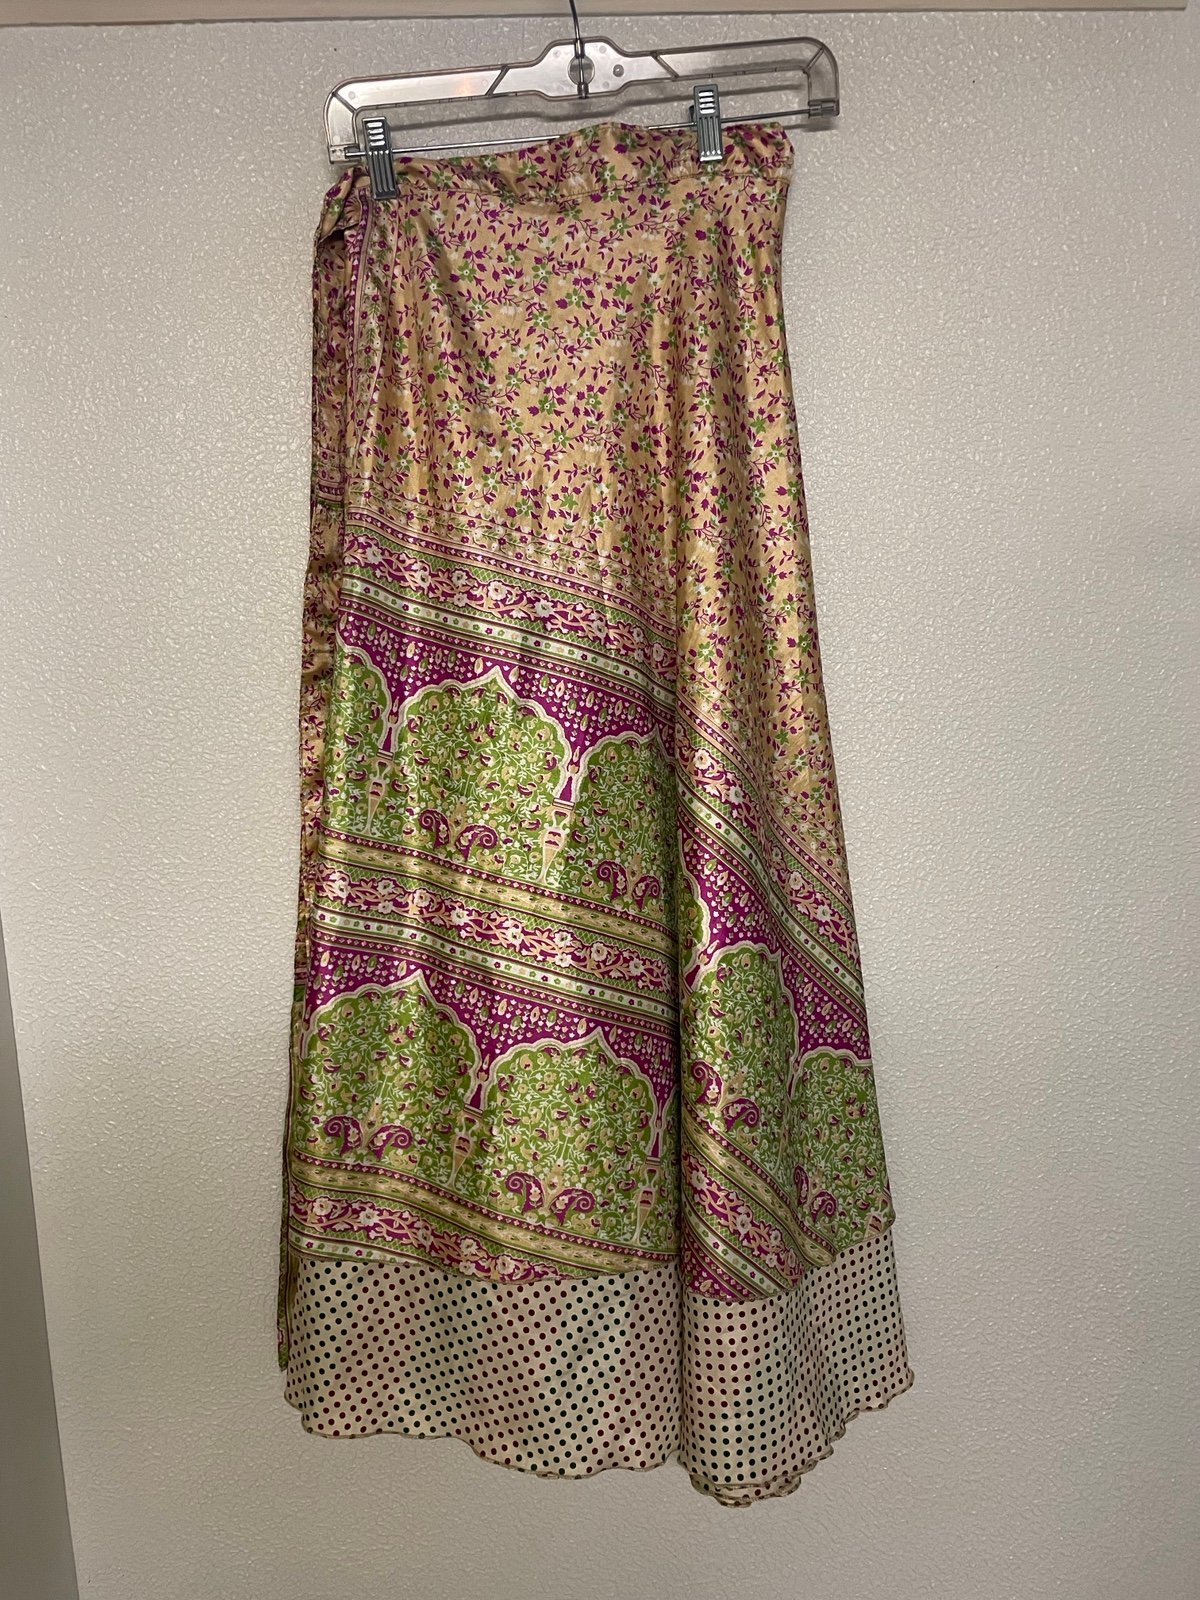 Stylish One size recycled sari wrap skirt. NWOT. Revers